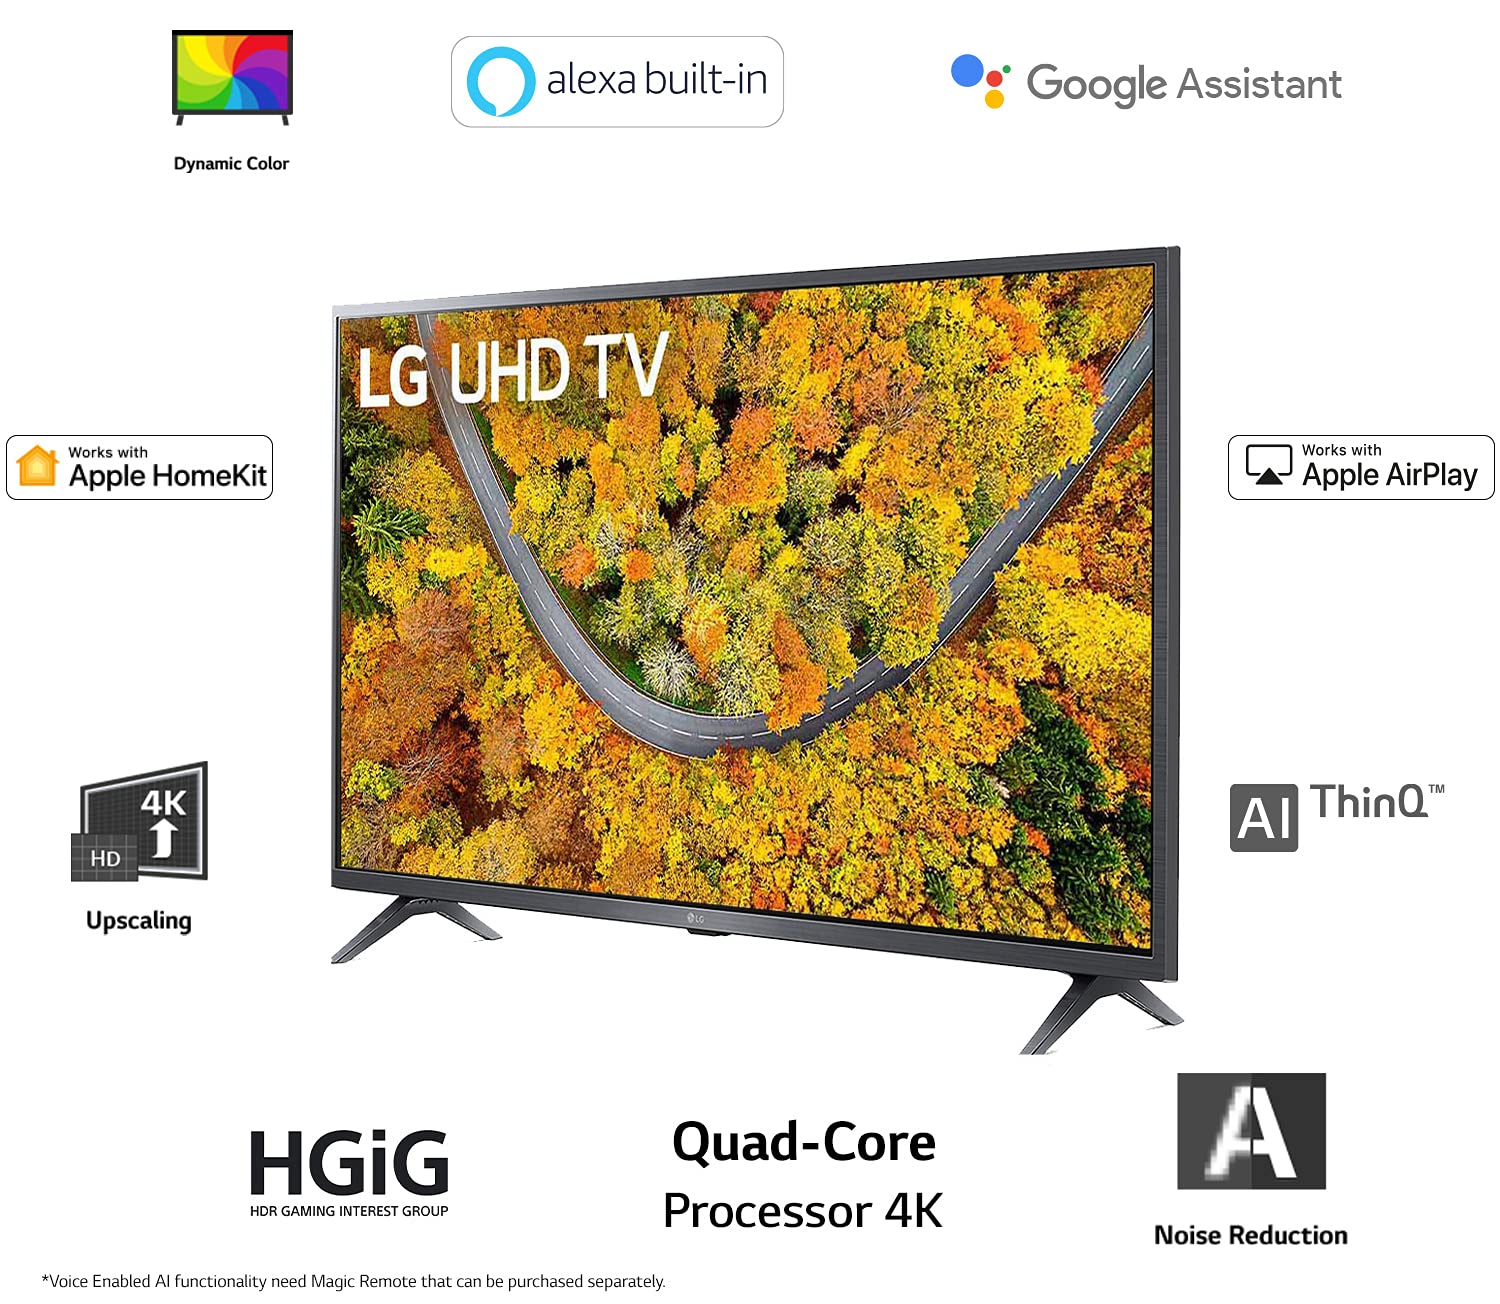 Amazon Deal: नये साल में खरीदना है नया टीवी, LG के 55 इंच Smart TV पर मिल रही है 27 हजार की छूट